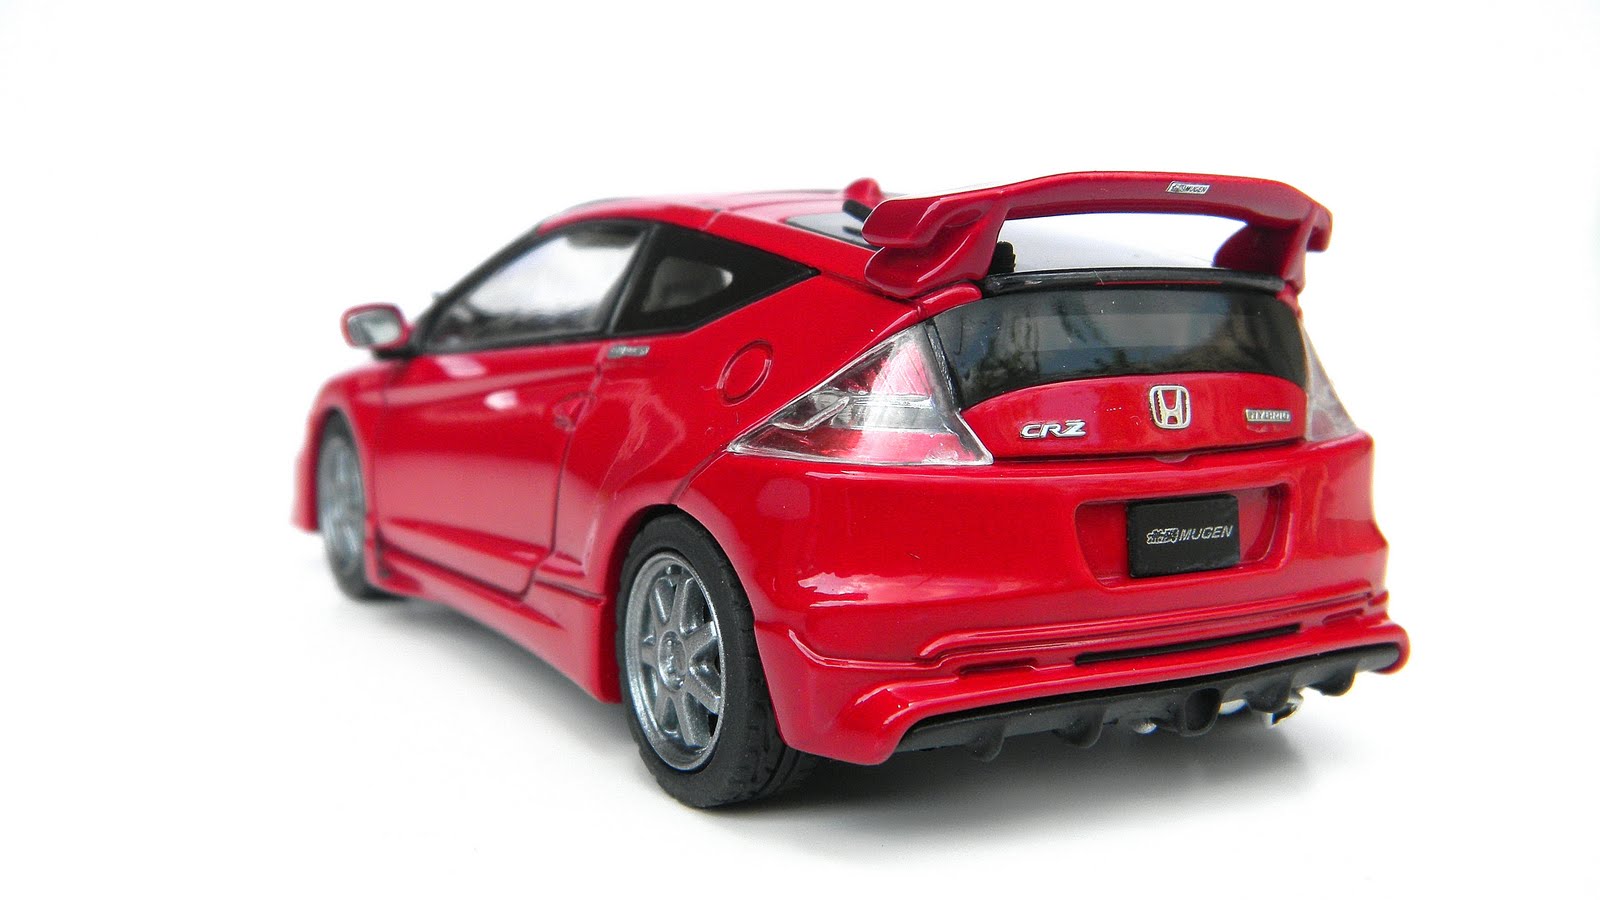 Honda models